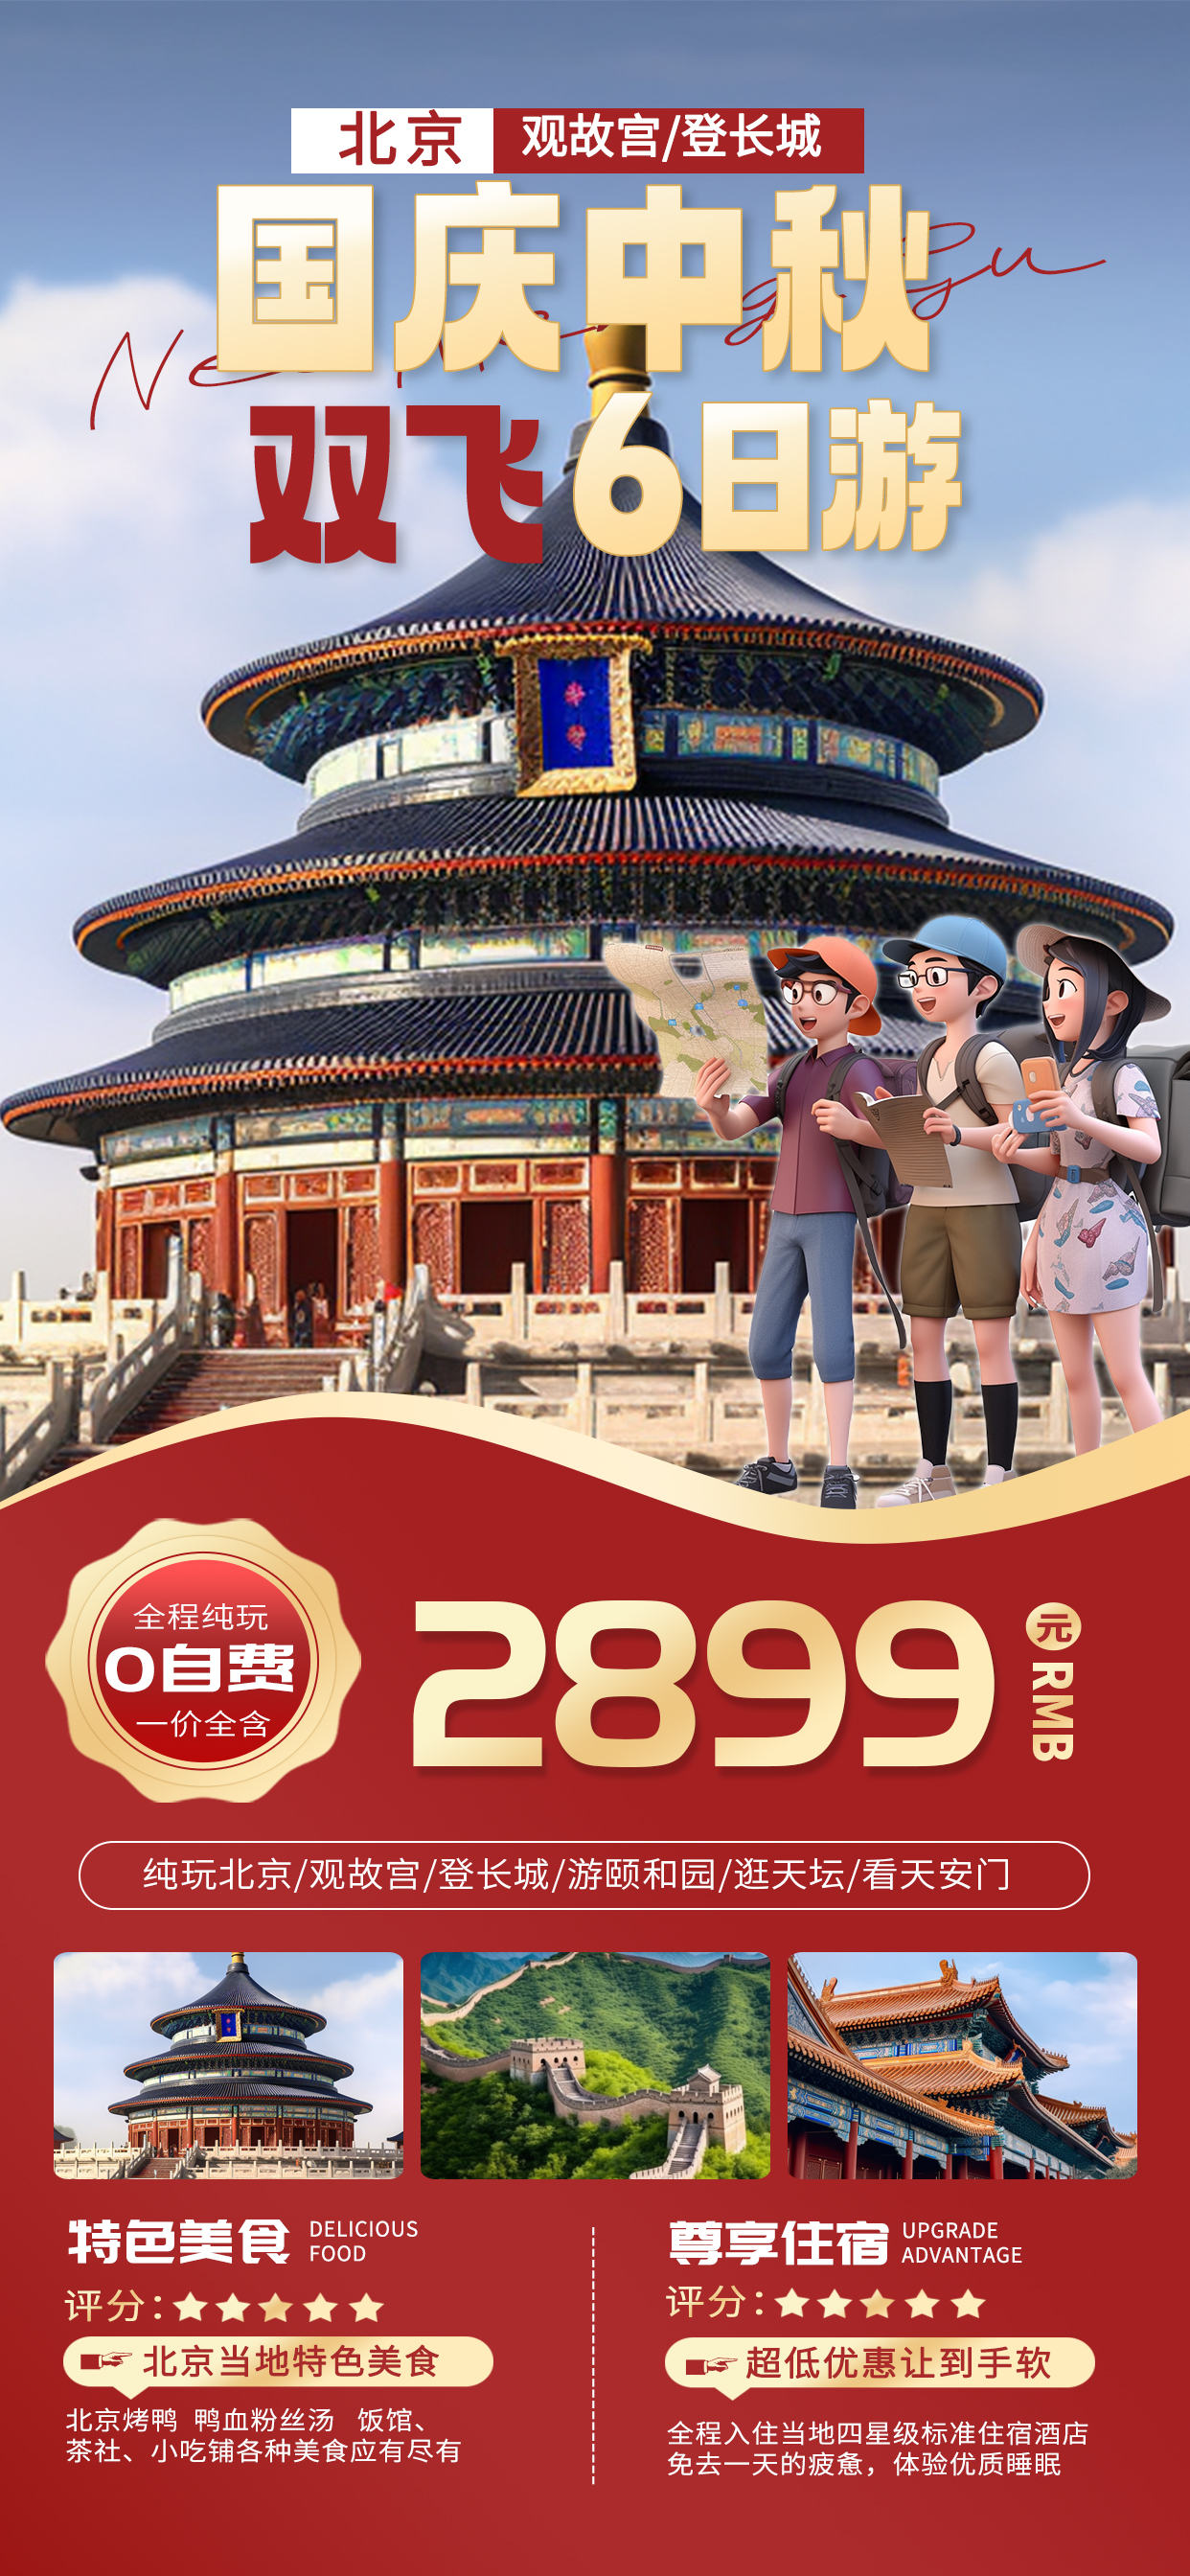 中秋节国庆节旅游AIGG模版红色简约广告营销促销海报图片